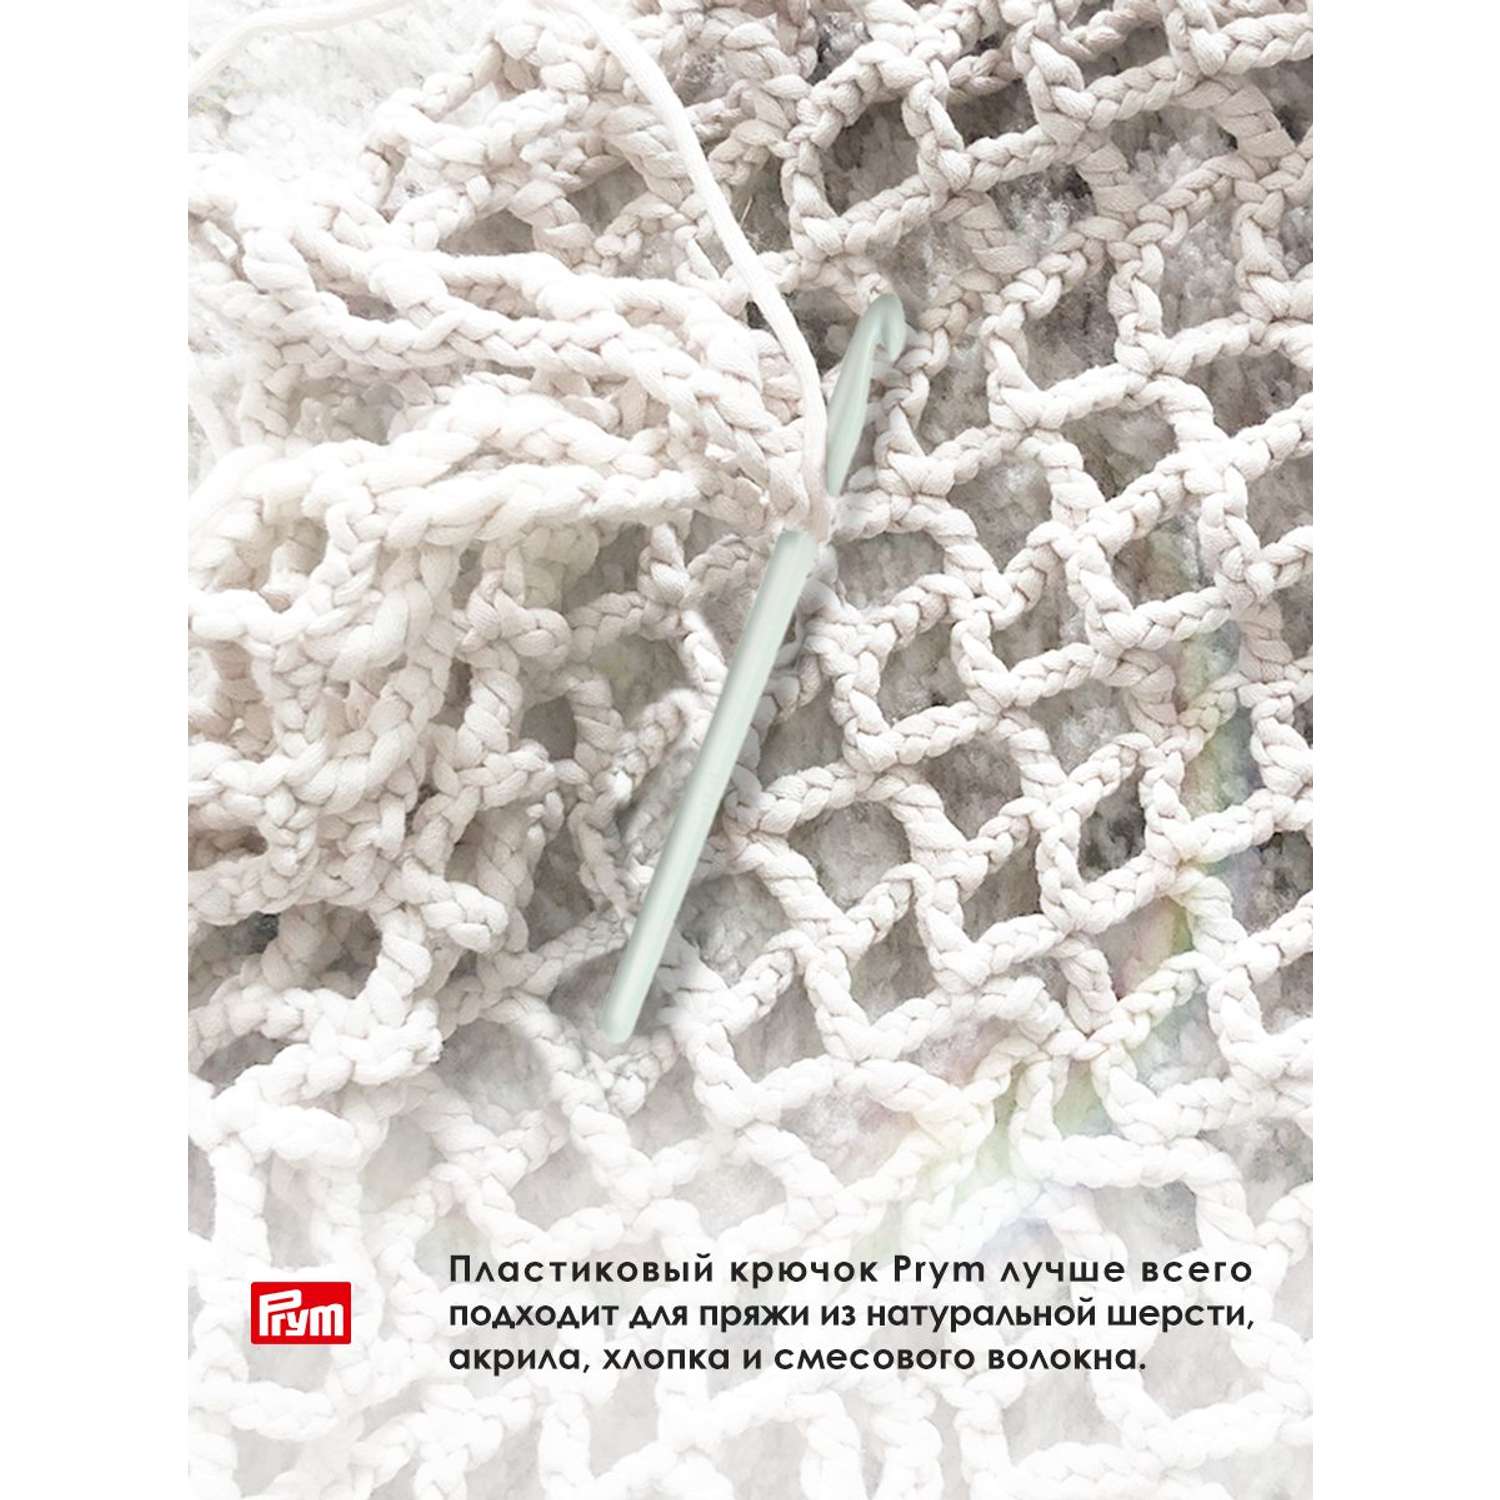 Крючок для вязания Prym пластиковый гладкий легкий для натуральной шерсти акрила 10 мм 14 см 218503 - фото 3